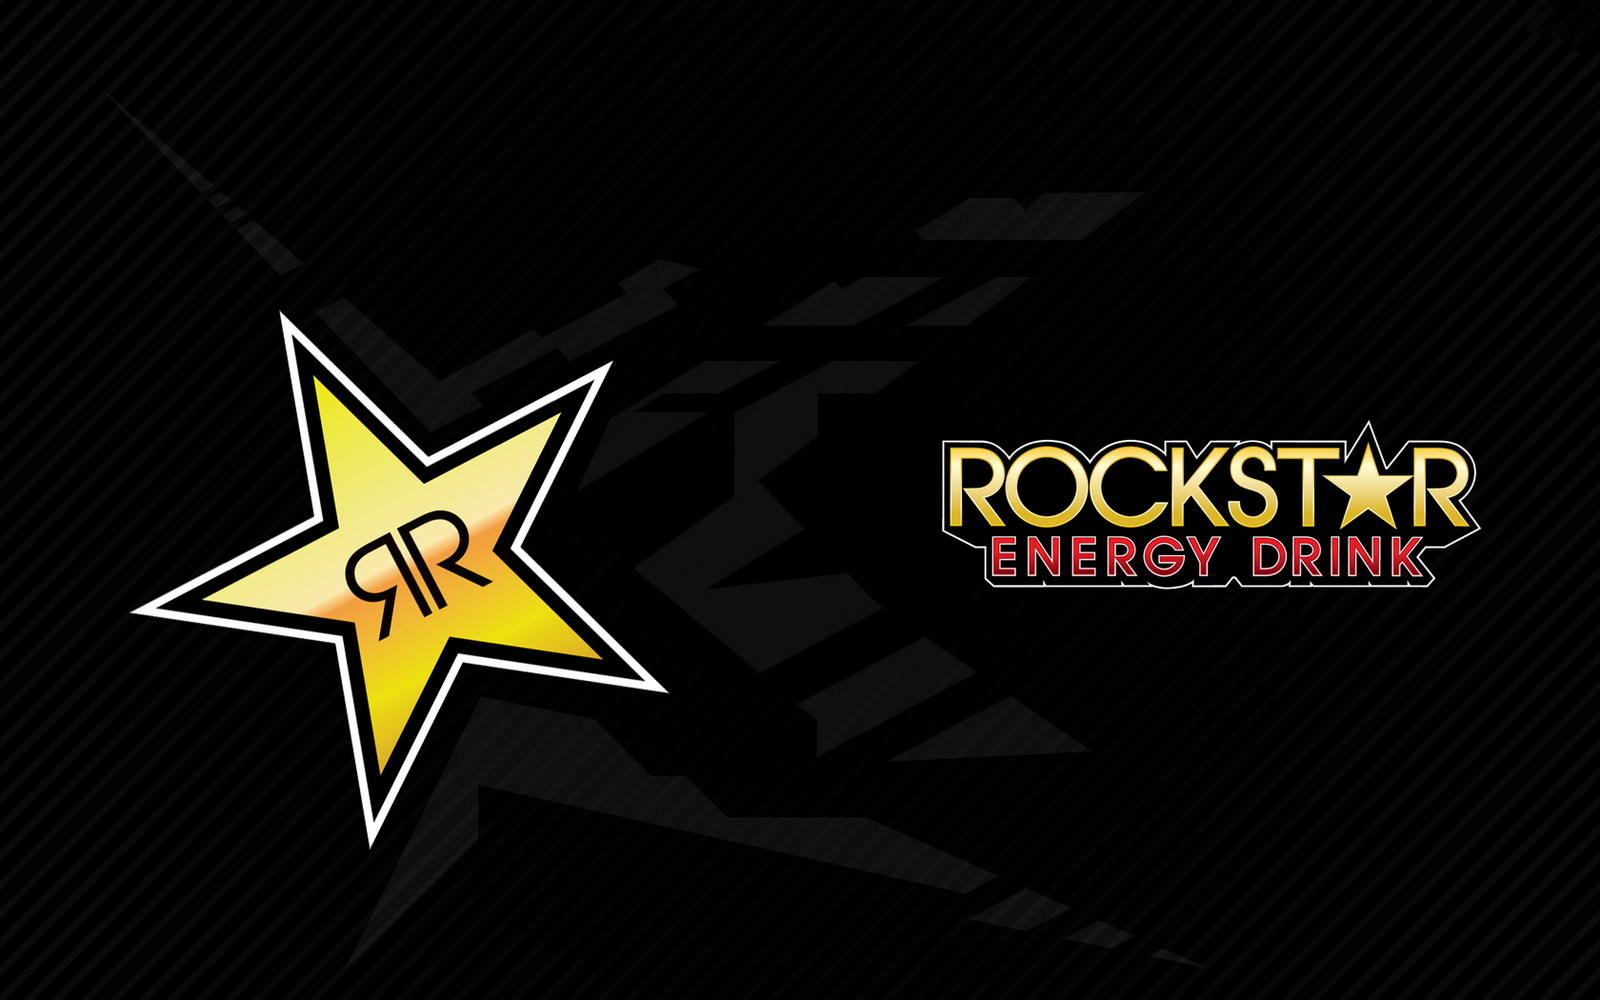 rockstar full movie hd 1080p free download